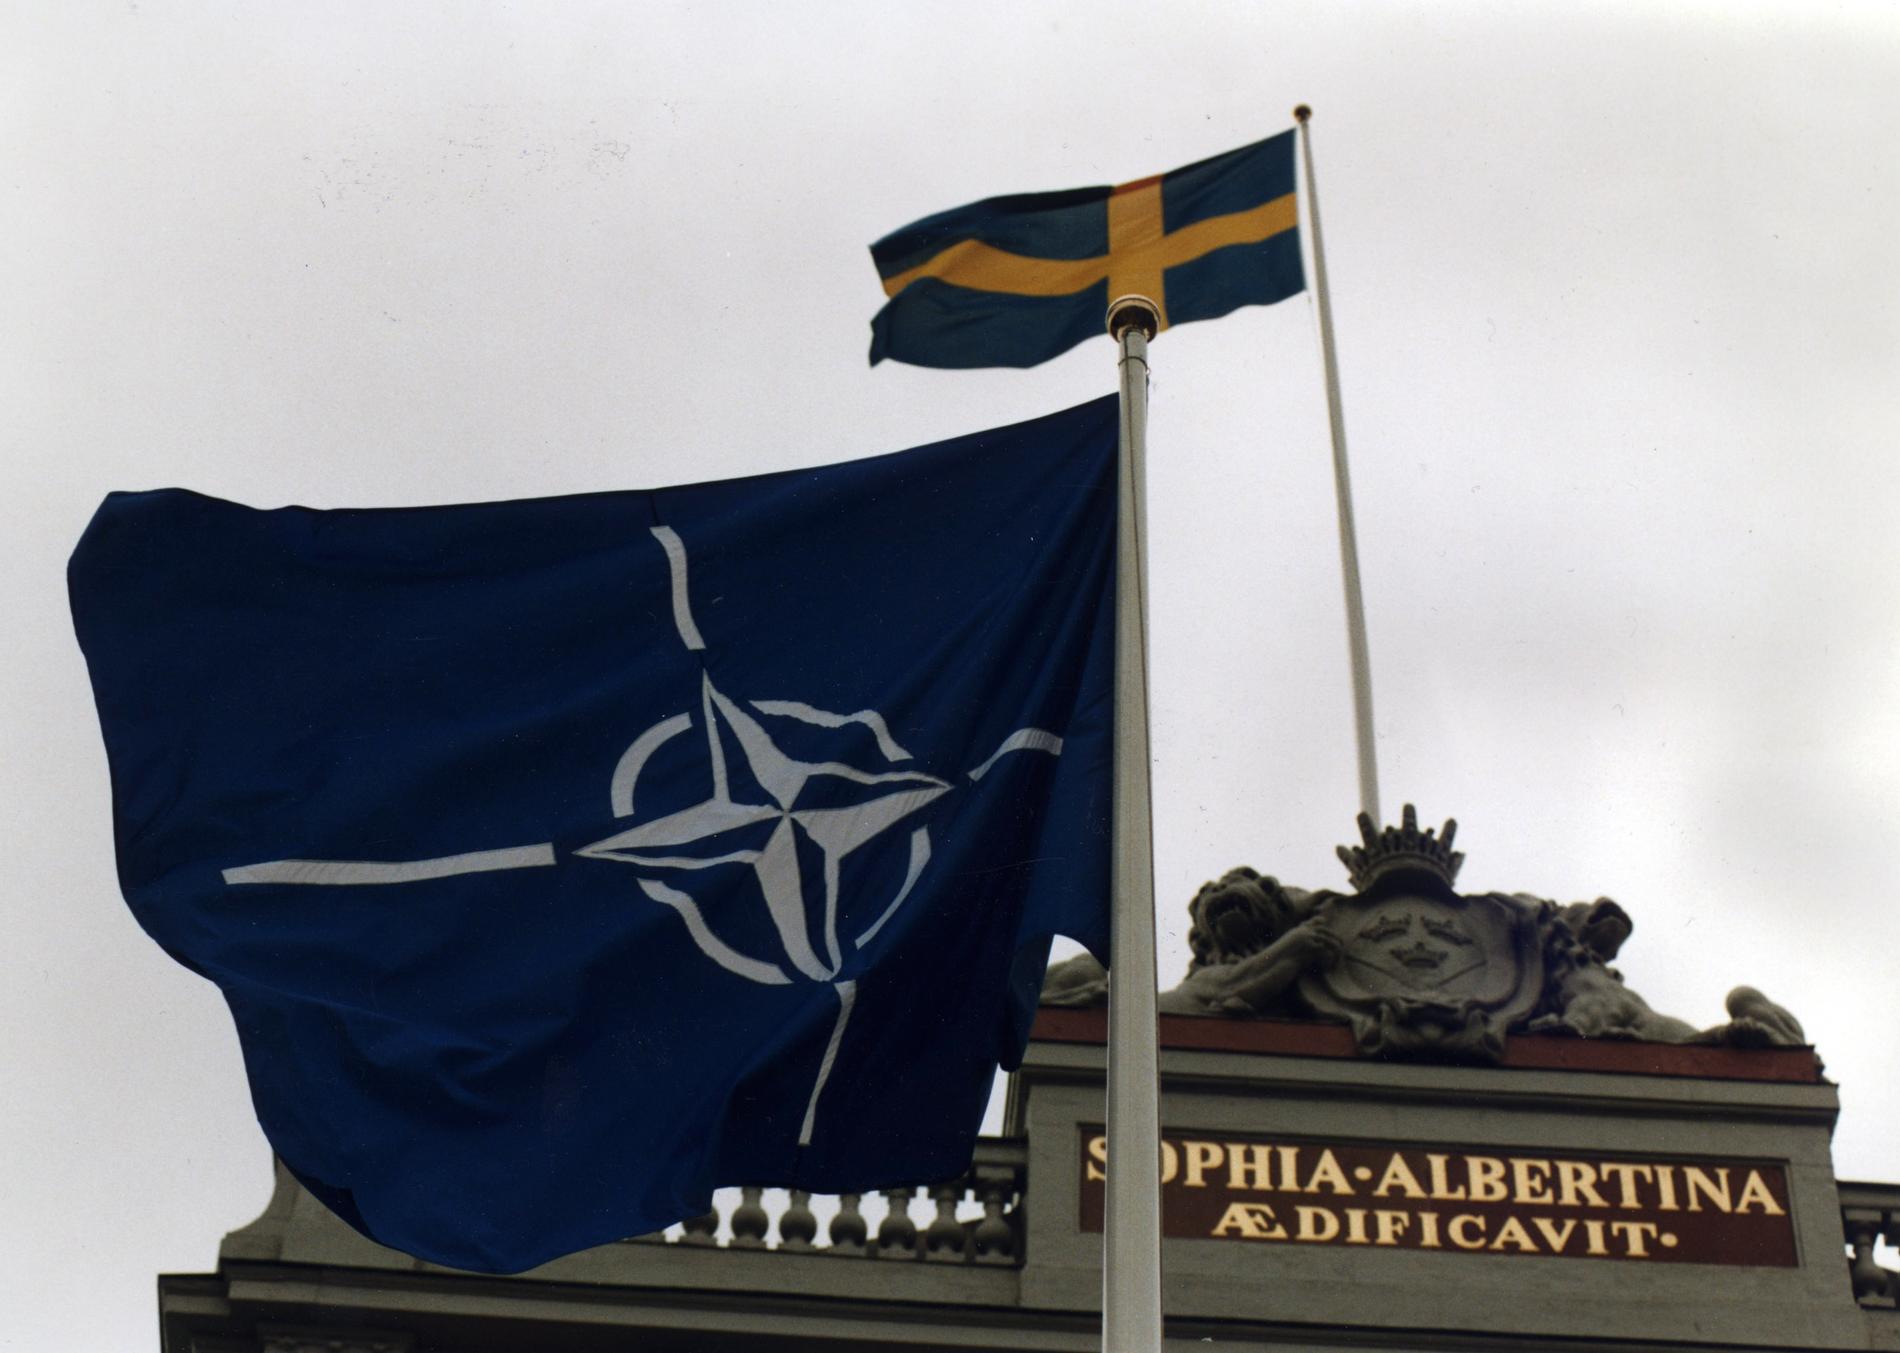 Sveriges relation till Nato är känslig och enligt MSB bedriver främmande makt påverkan mot Sverige för att påverka svenskars uppfattning om försvarsalliansen. Arkivbild.